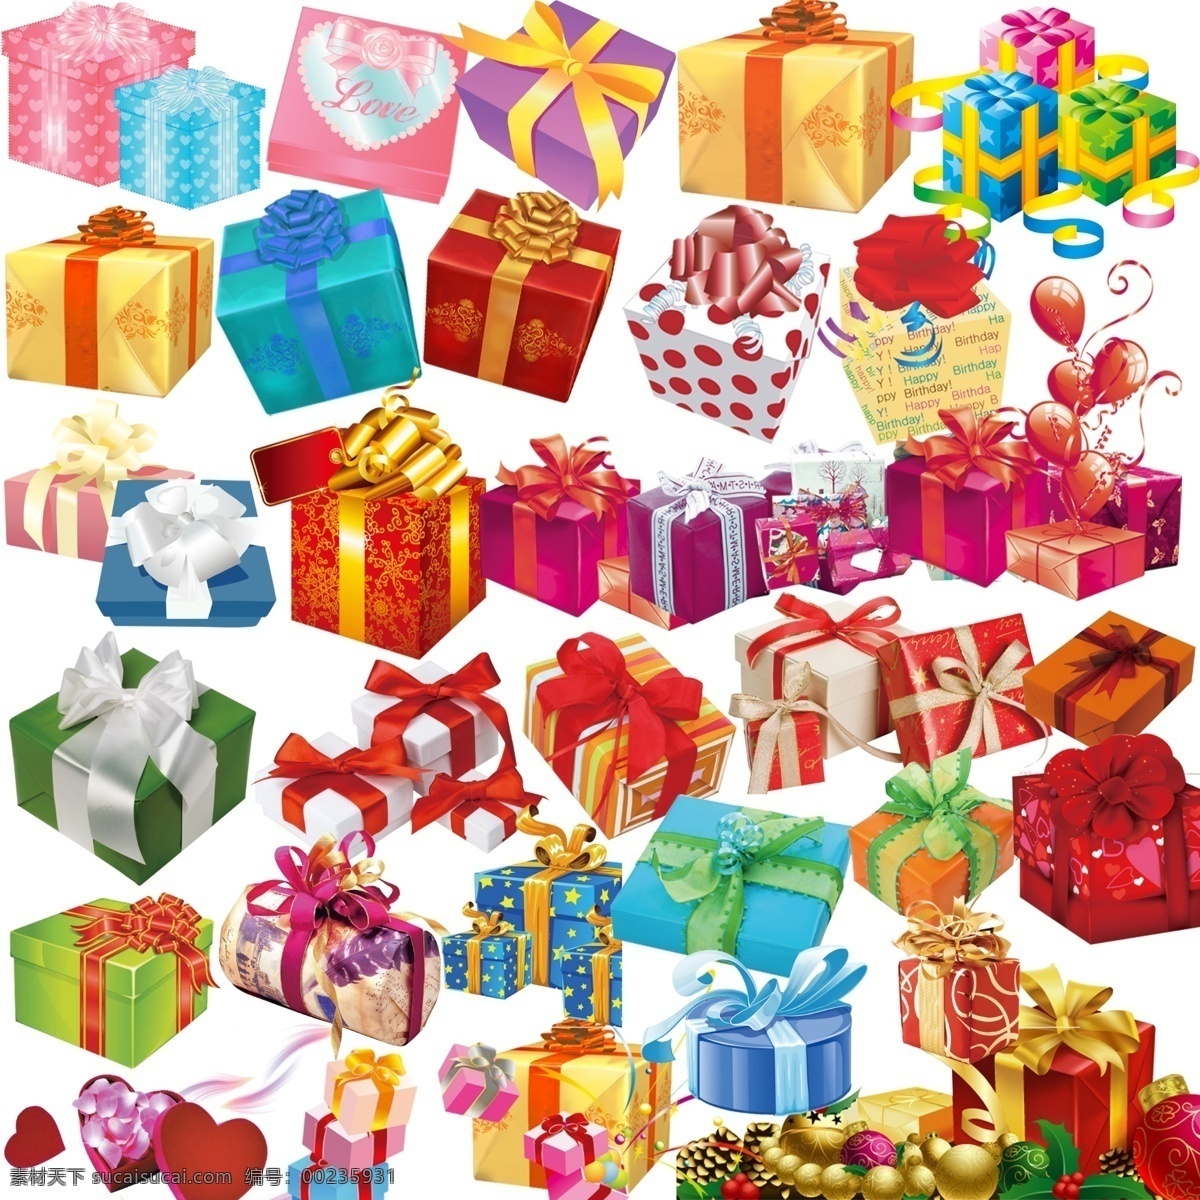 礼品盒 模板下载 礼物盒 礼品 装饰盒 惊喜 包装盒 分层 源文件